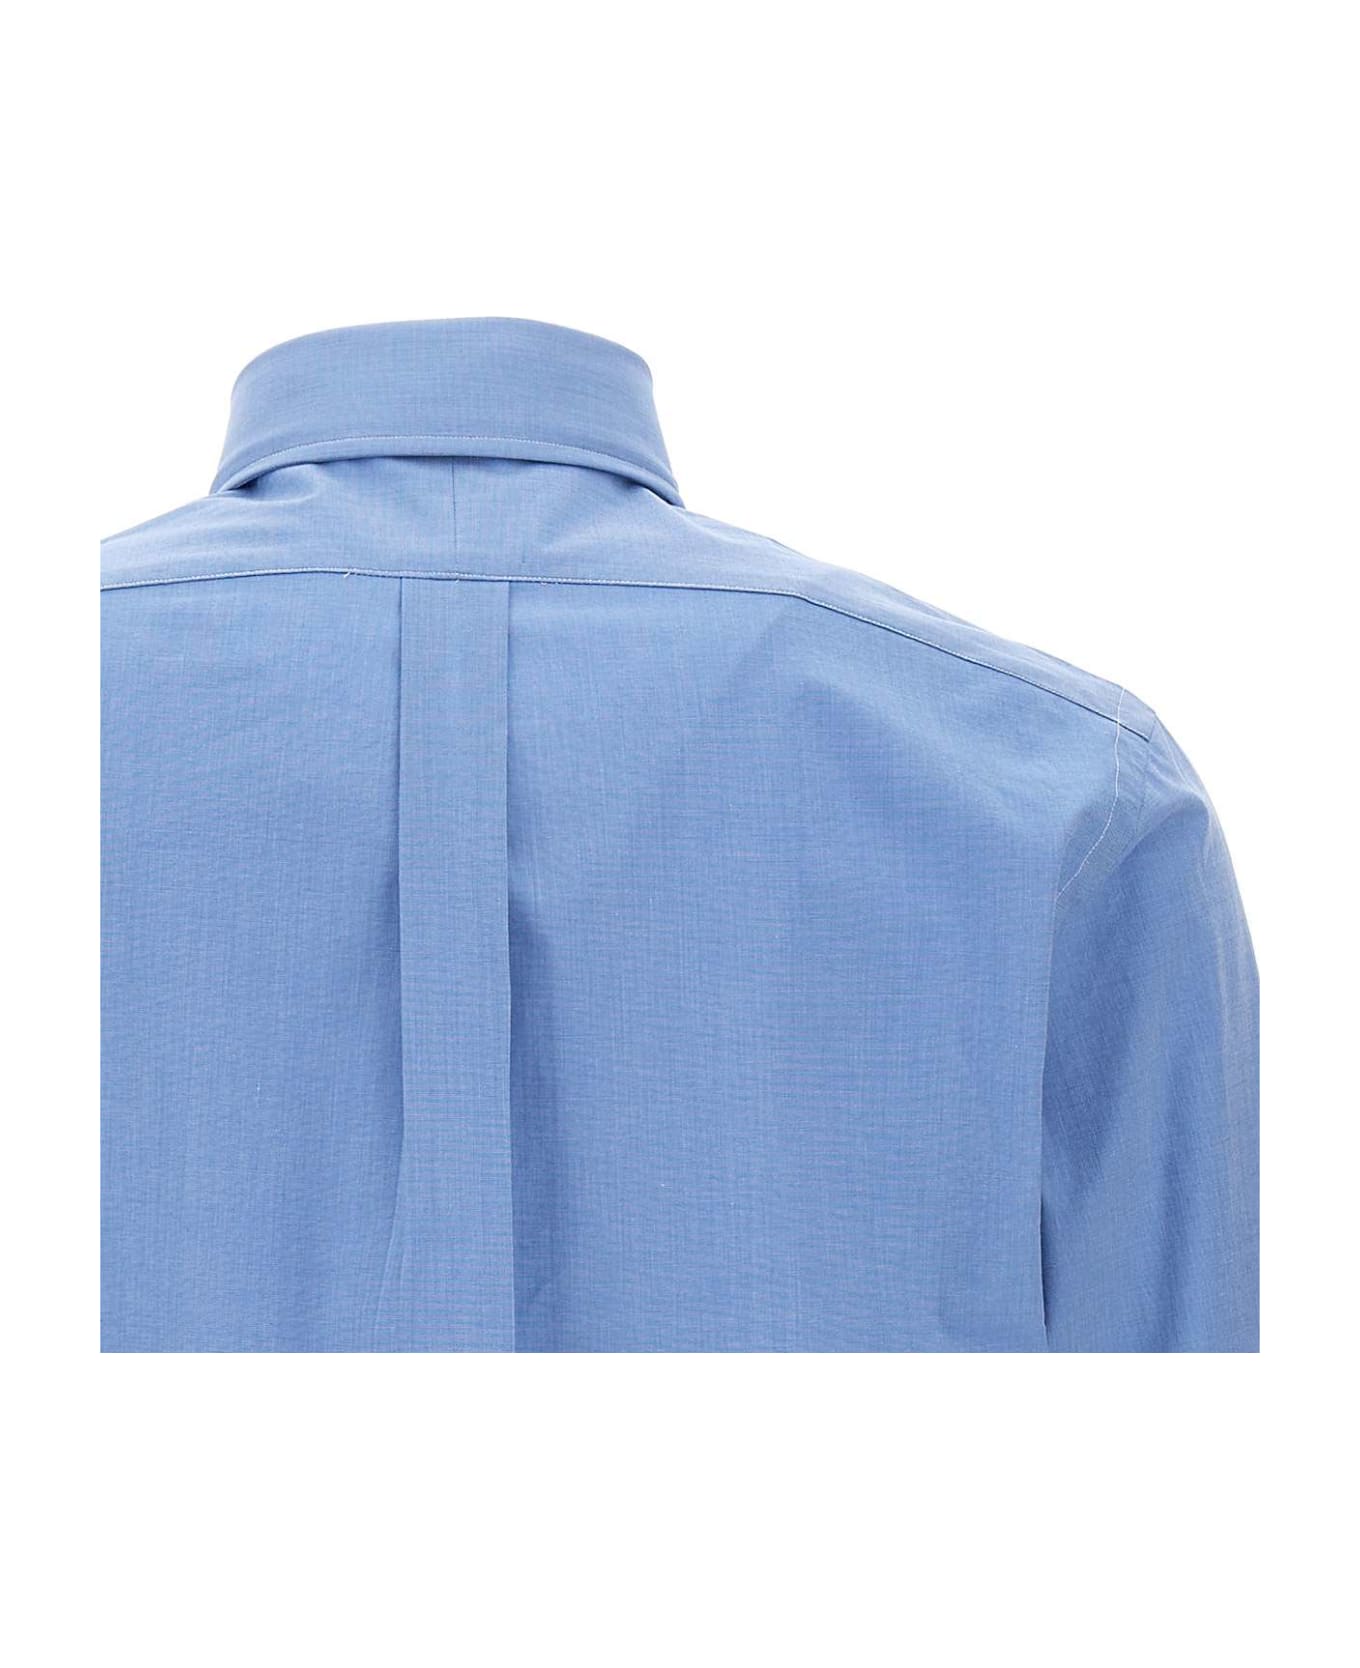 Polo Ralph Lauren Long Sleeve Sport Shirt Shirt - BLUE